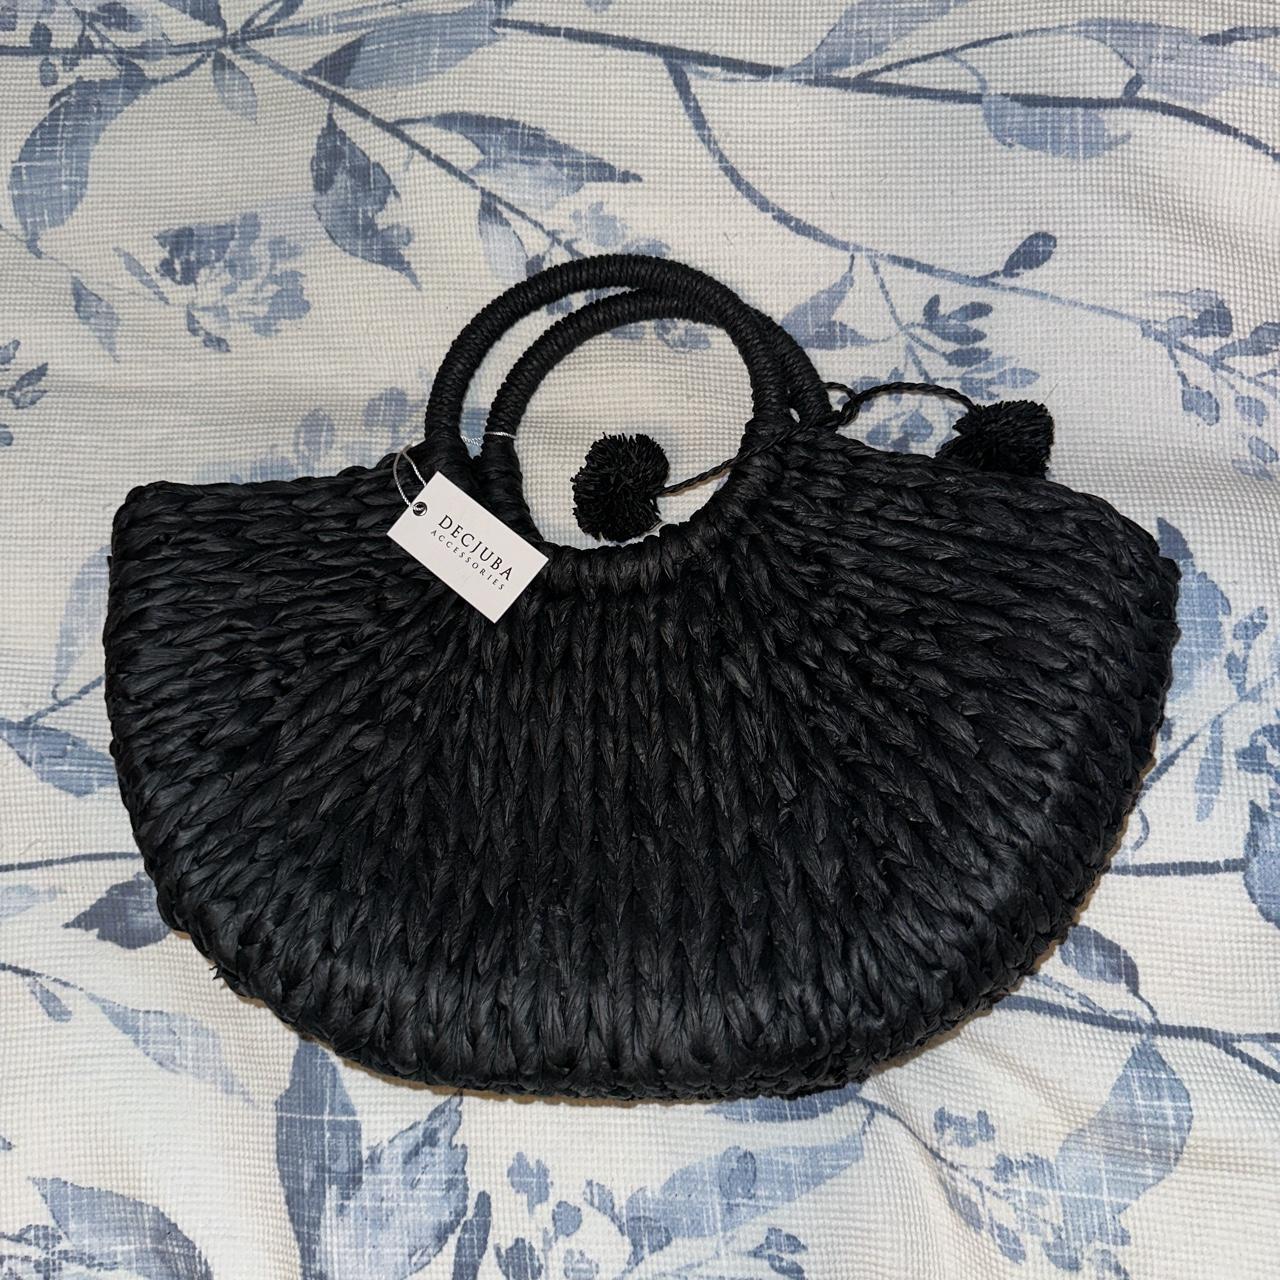 Decjuba black straw bag with tassel, brand new with... - Depop